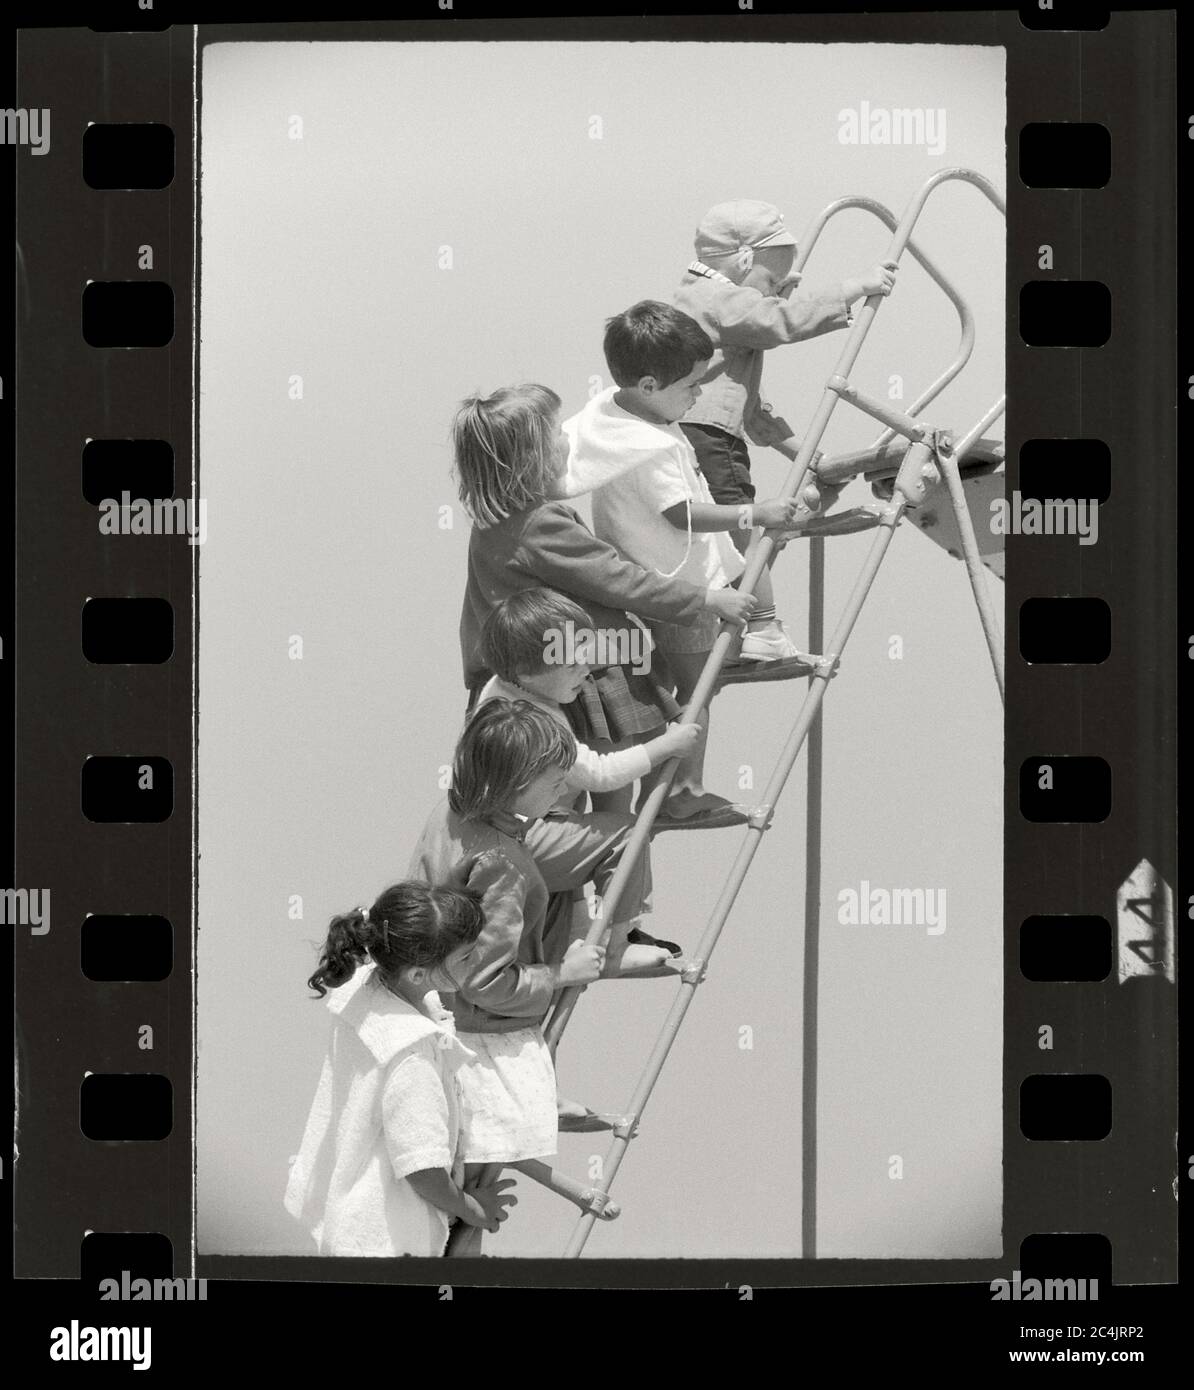 Aire de jeux pour enfants monter les escaliers pour descendre un toboggan, vers 1950. Image à partir d'un négatif 35 mm. Banque D'Images